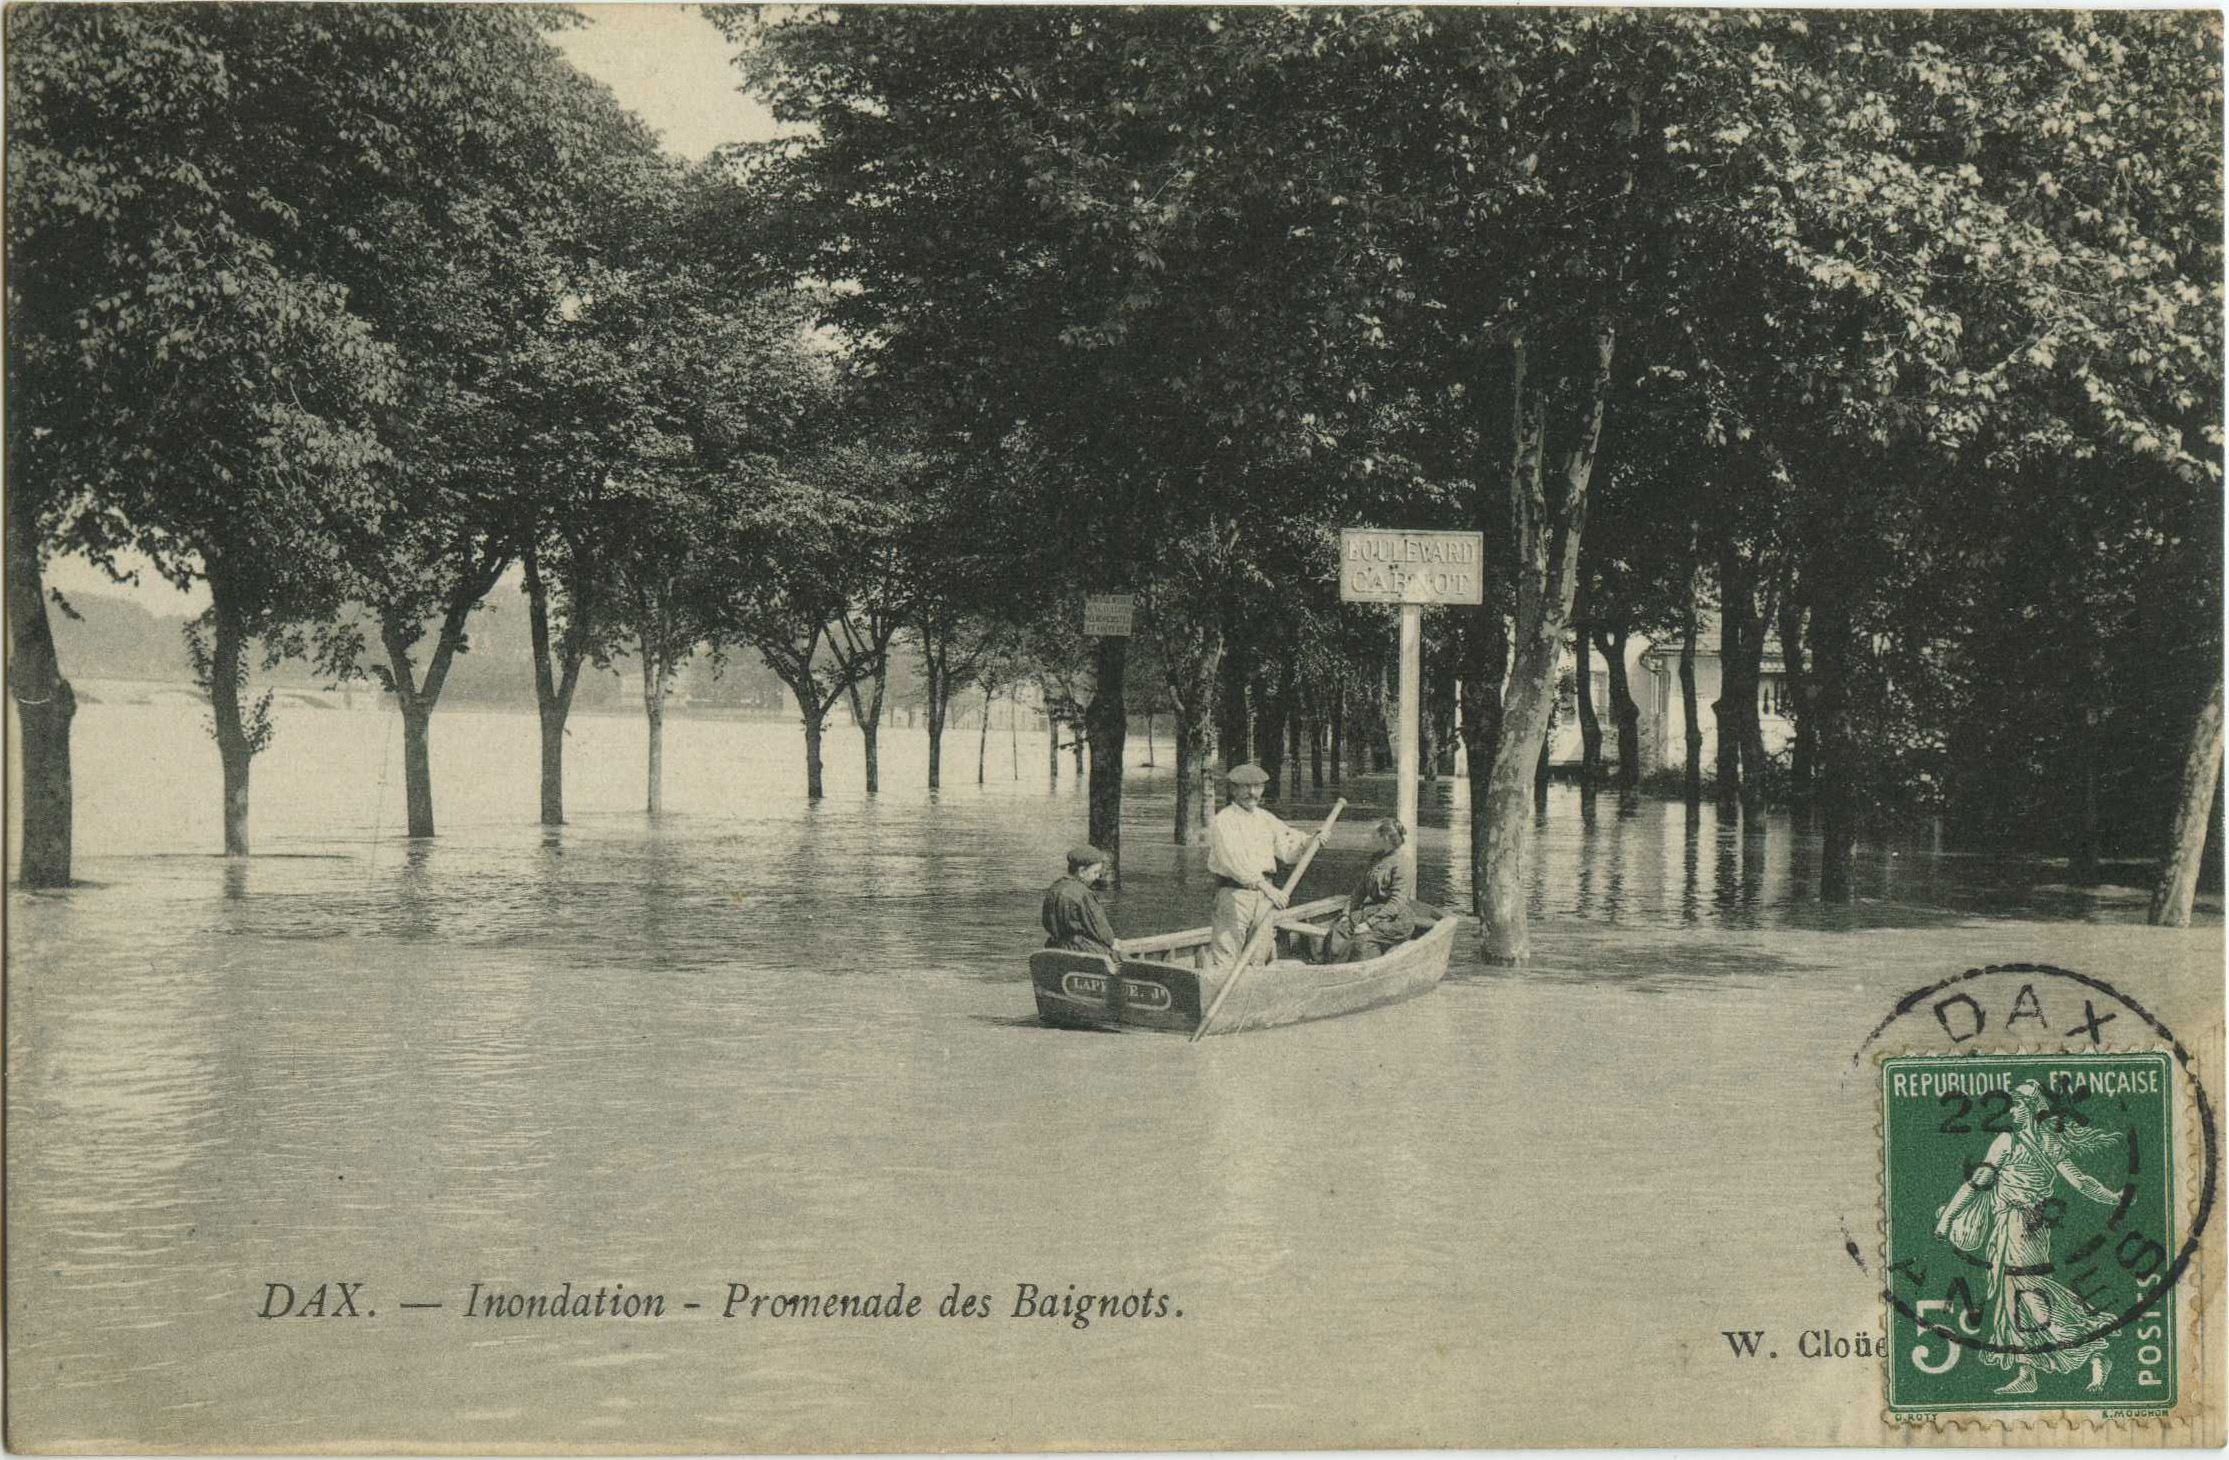 Dax - Inondation - Promenade des Baignots.